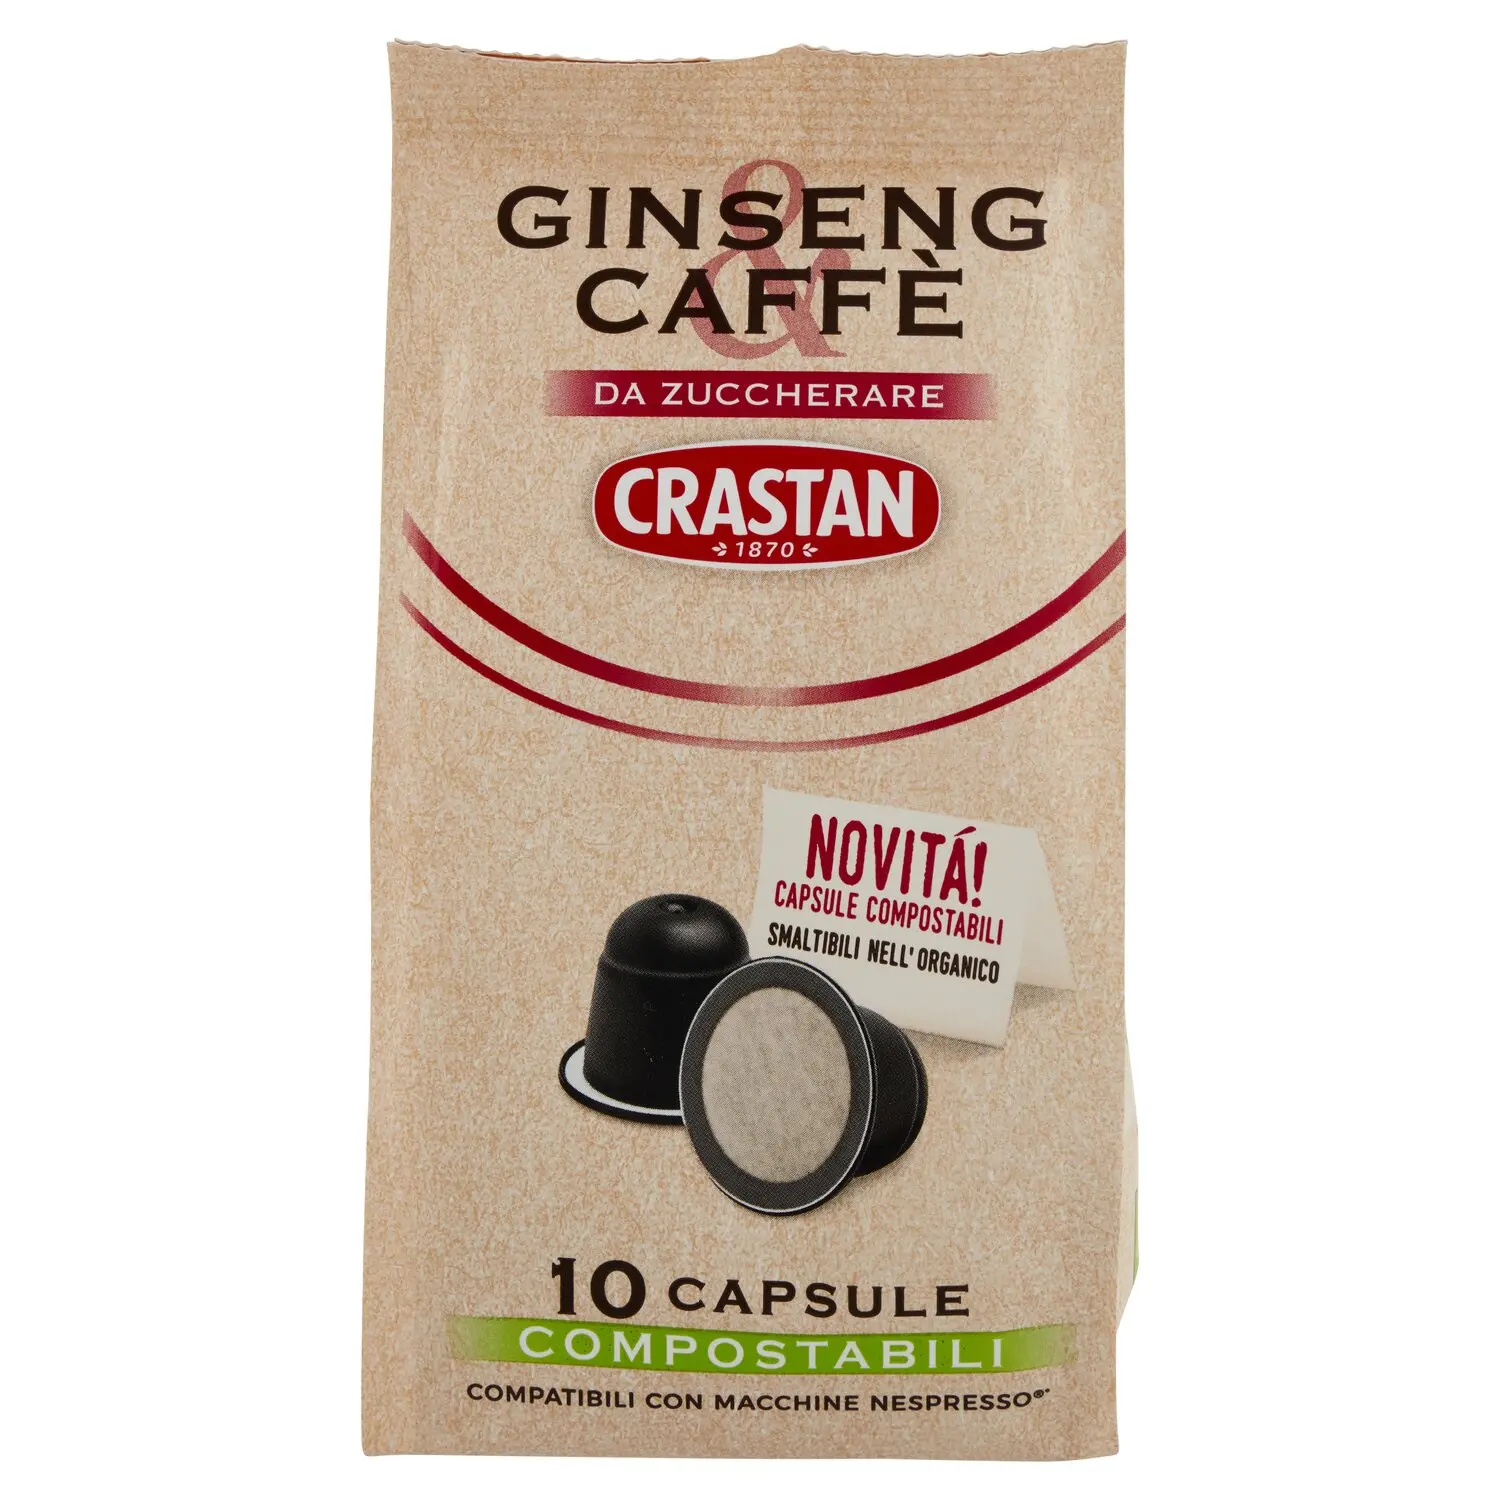 Crastan Ginseng & Caffè da Zuccherare 10 Capsule Compostabili Compat.  Macchine Nespresso* 10 x 3,7 g